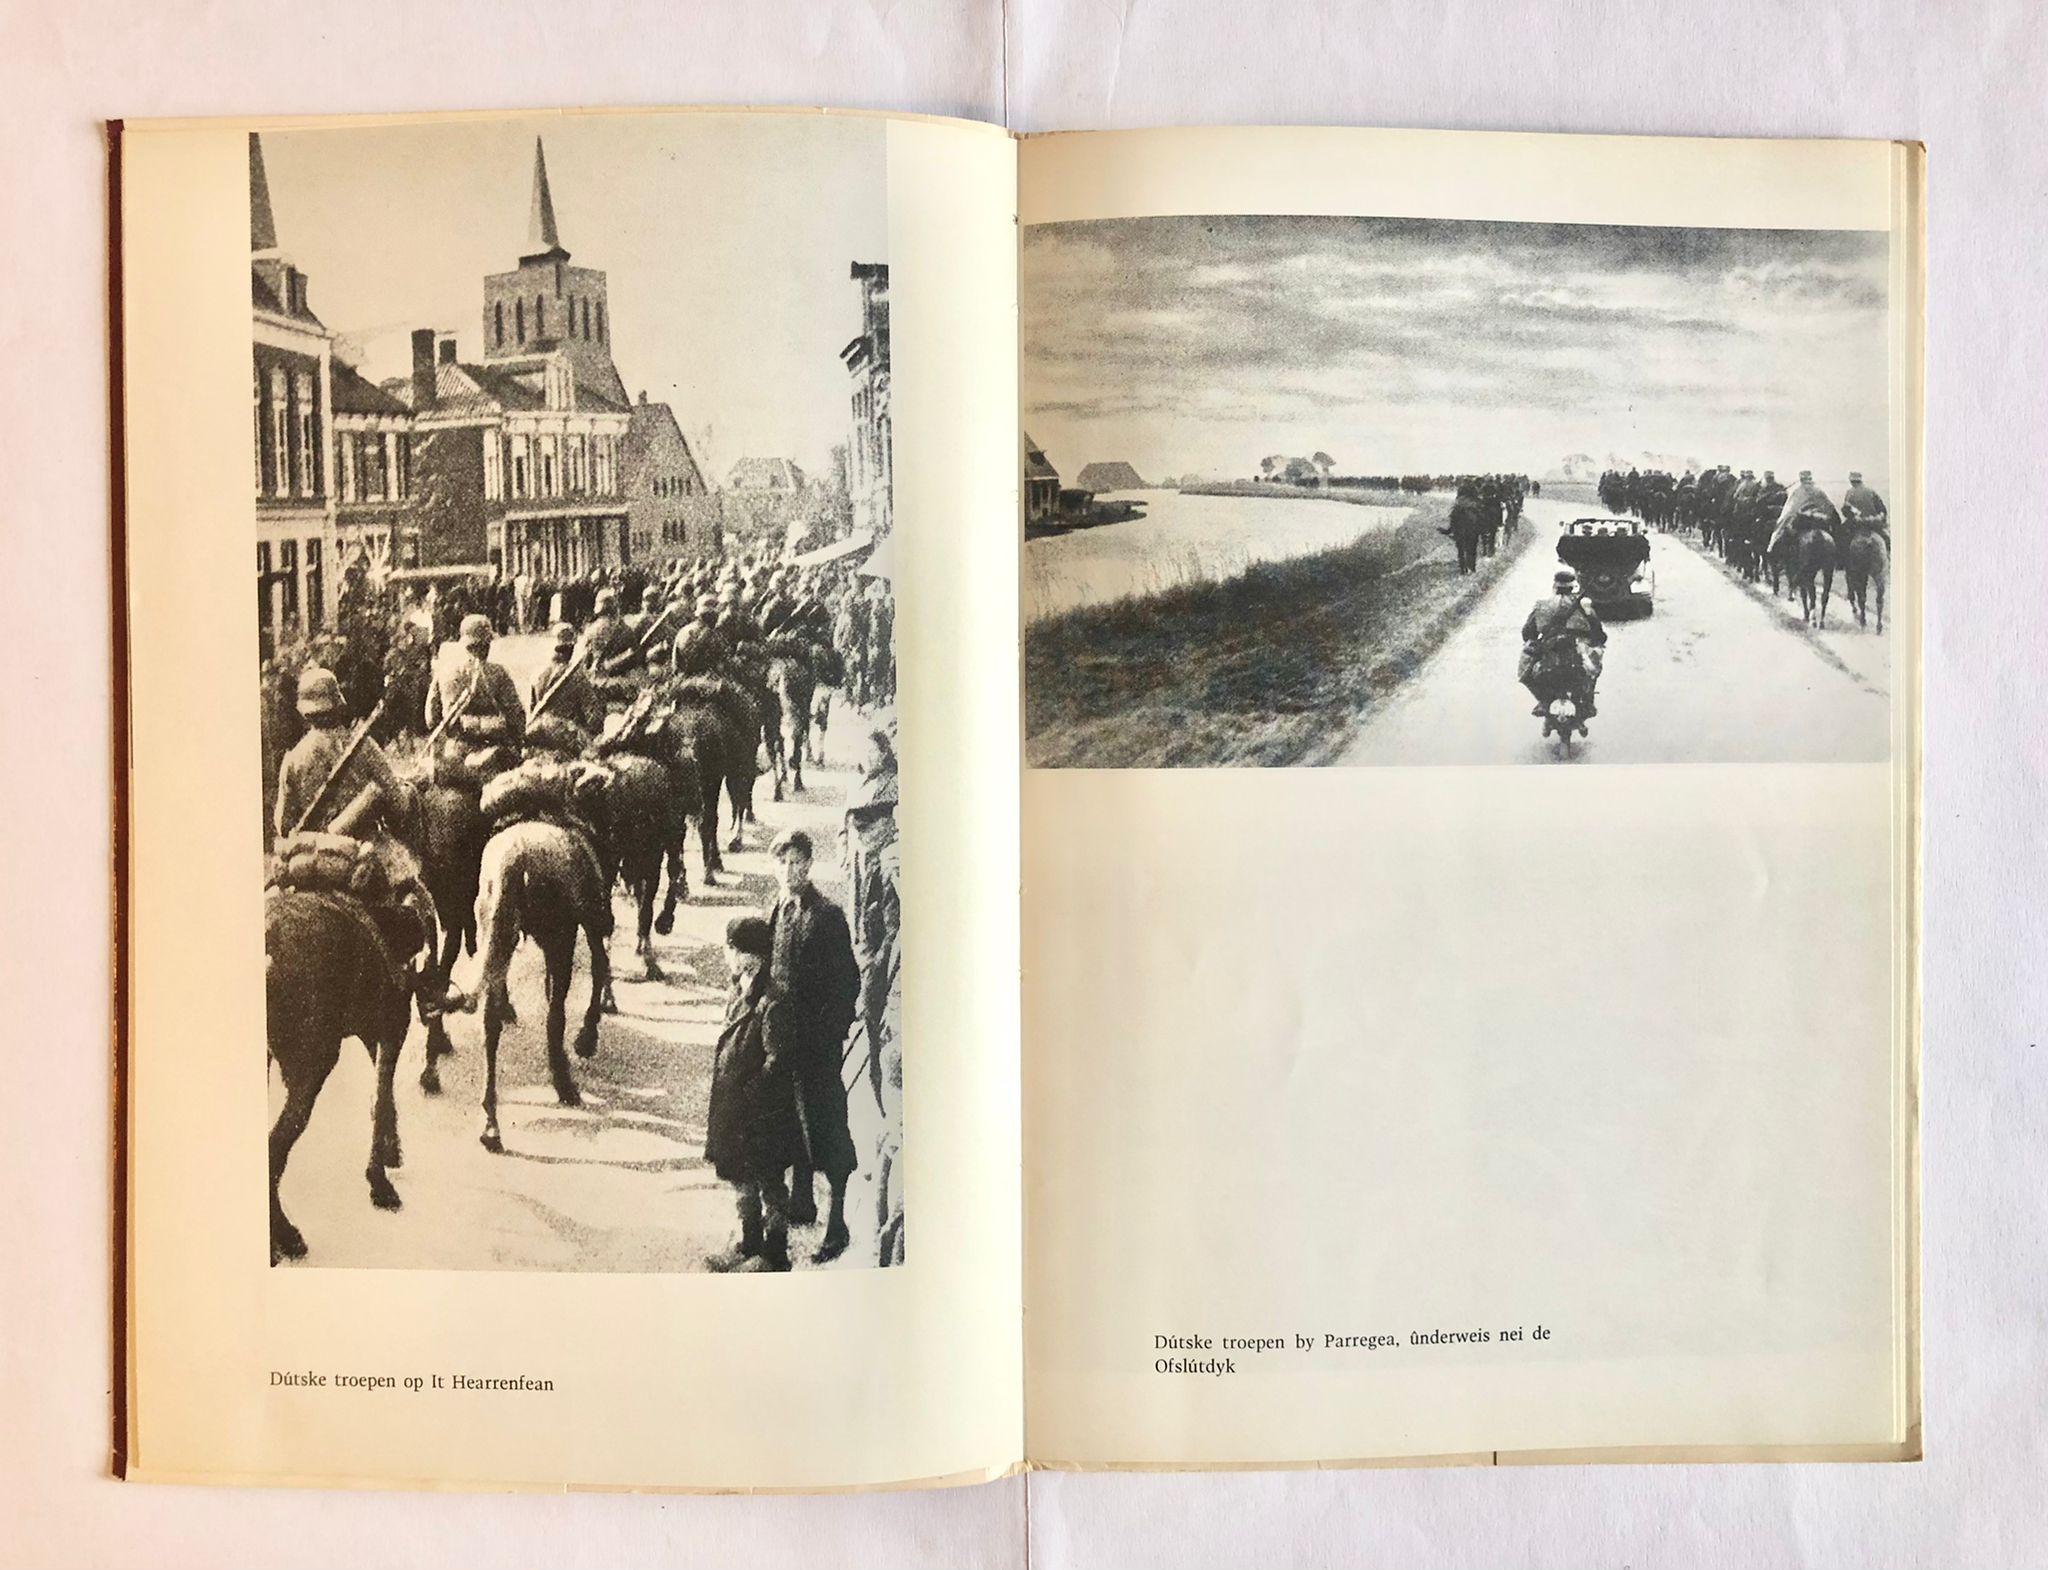 [Friesland, [1910], music] Friesland’s Zanger, een historisch verhaal, Tweede druk, G. F. Callenbach, Nijkerk, [1910] 62 pp.